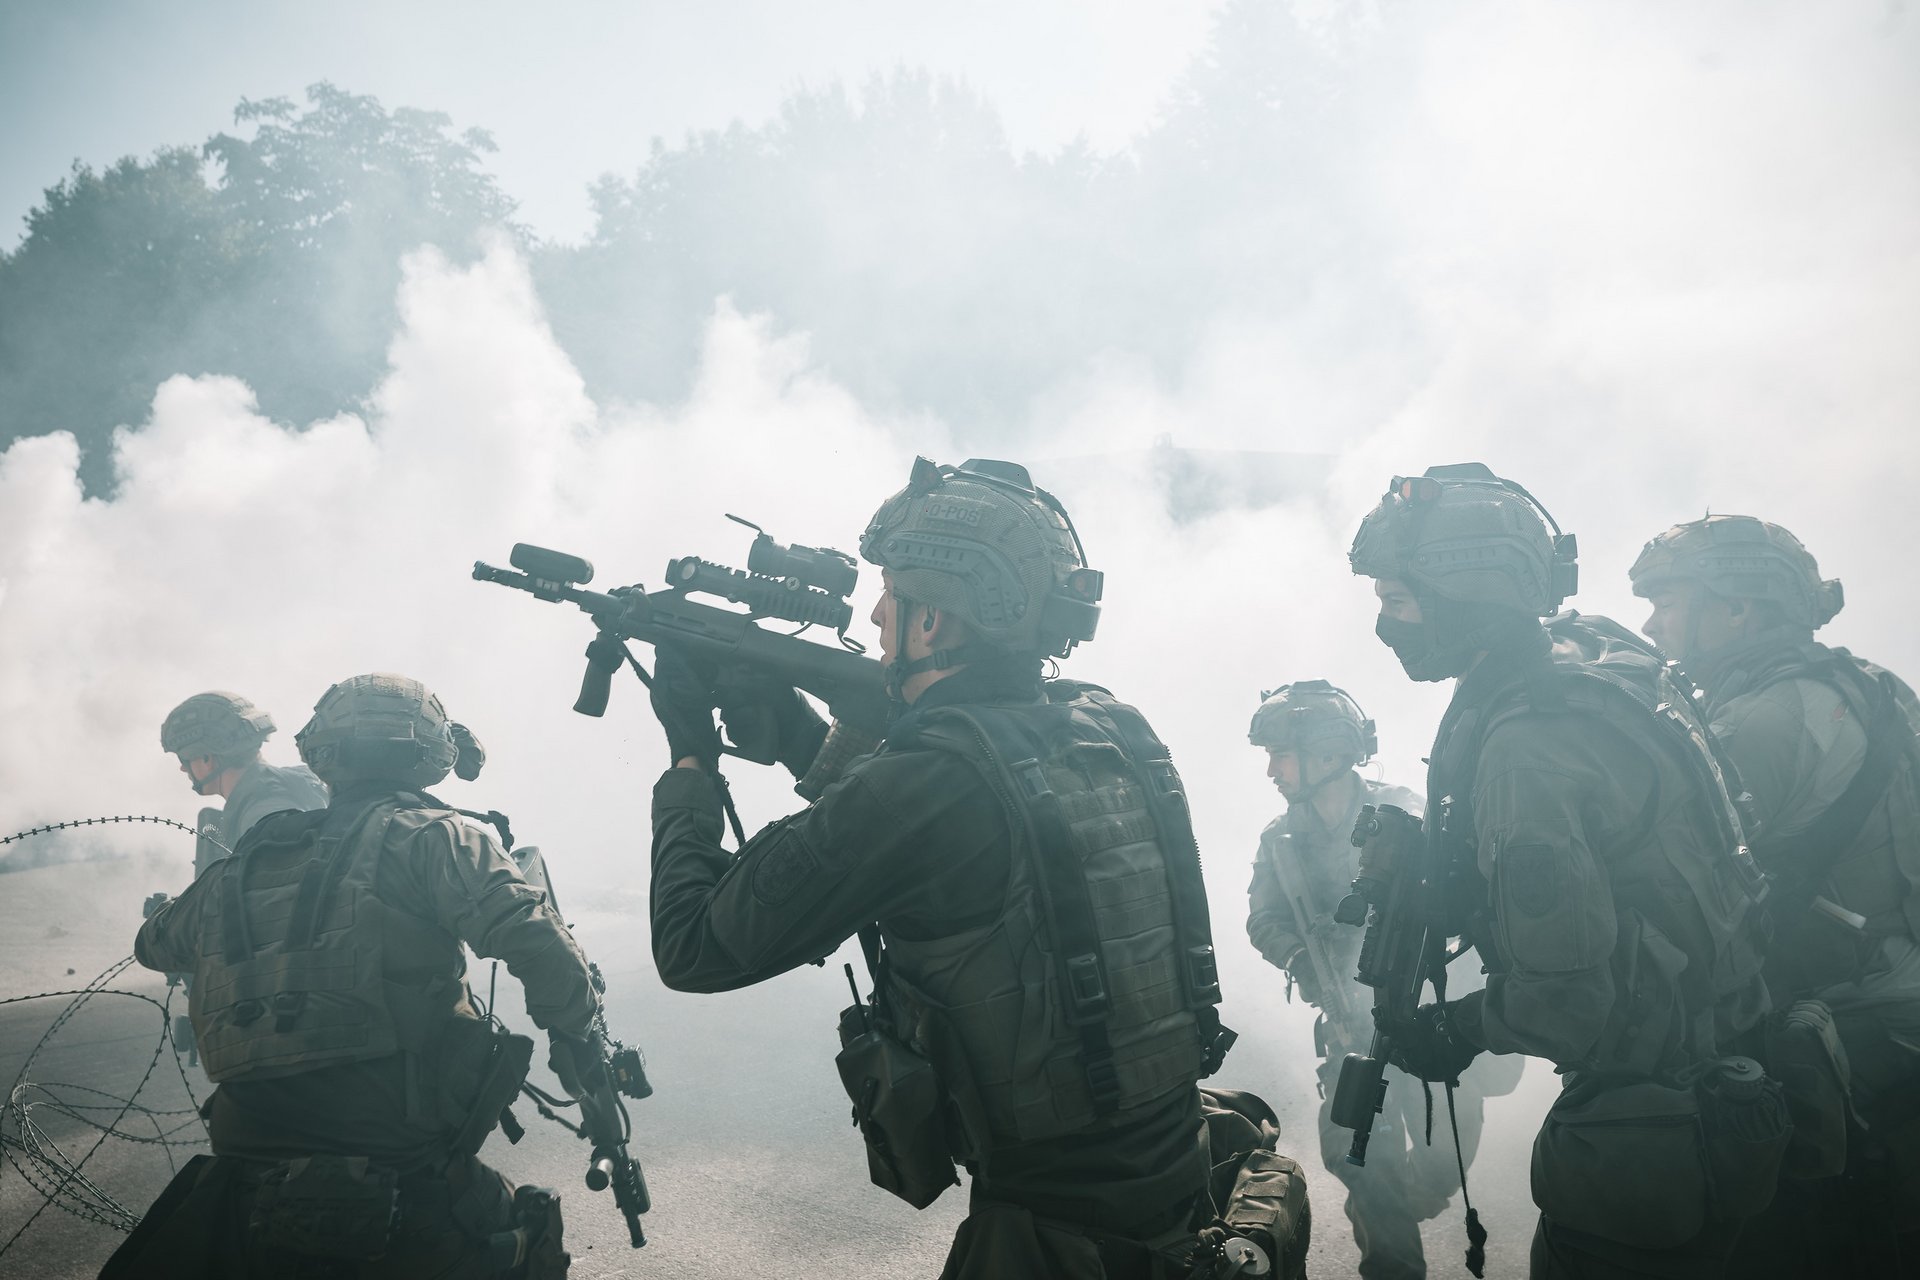 Soldaten gehen bei dichtem Rauch in einer Ortskampfanlage vor.